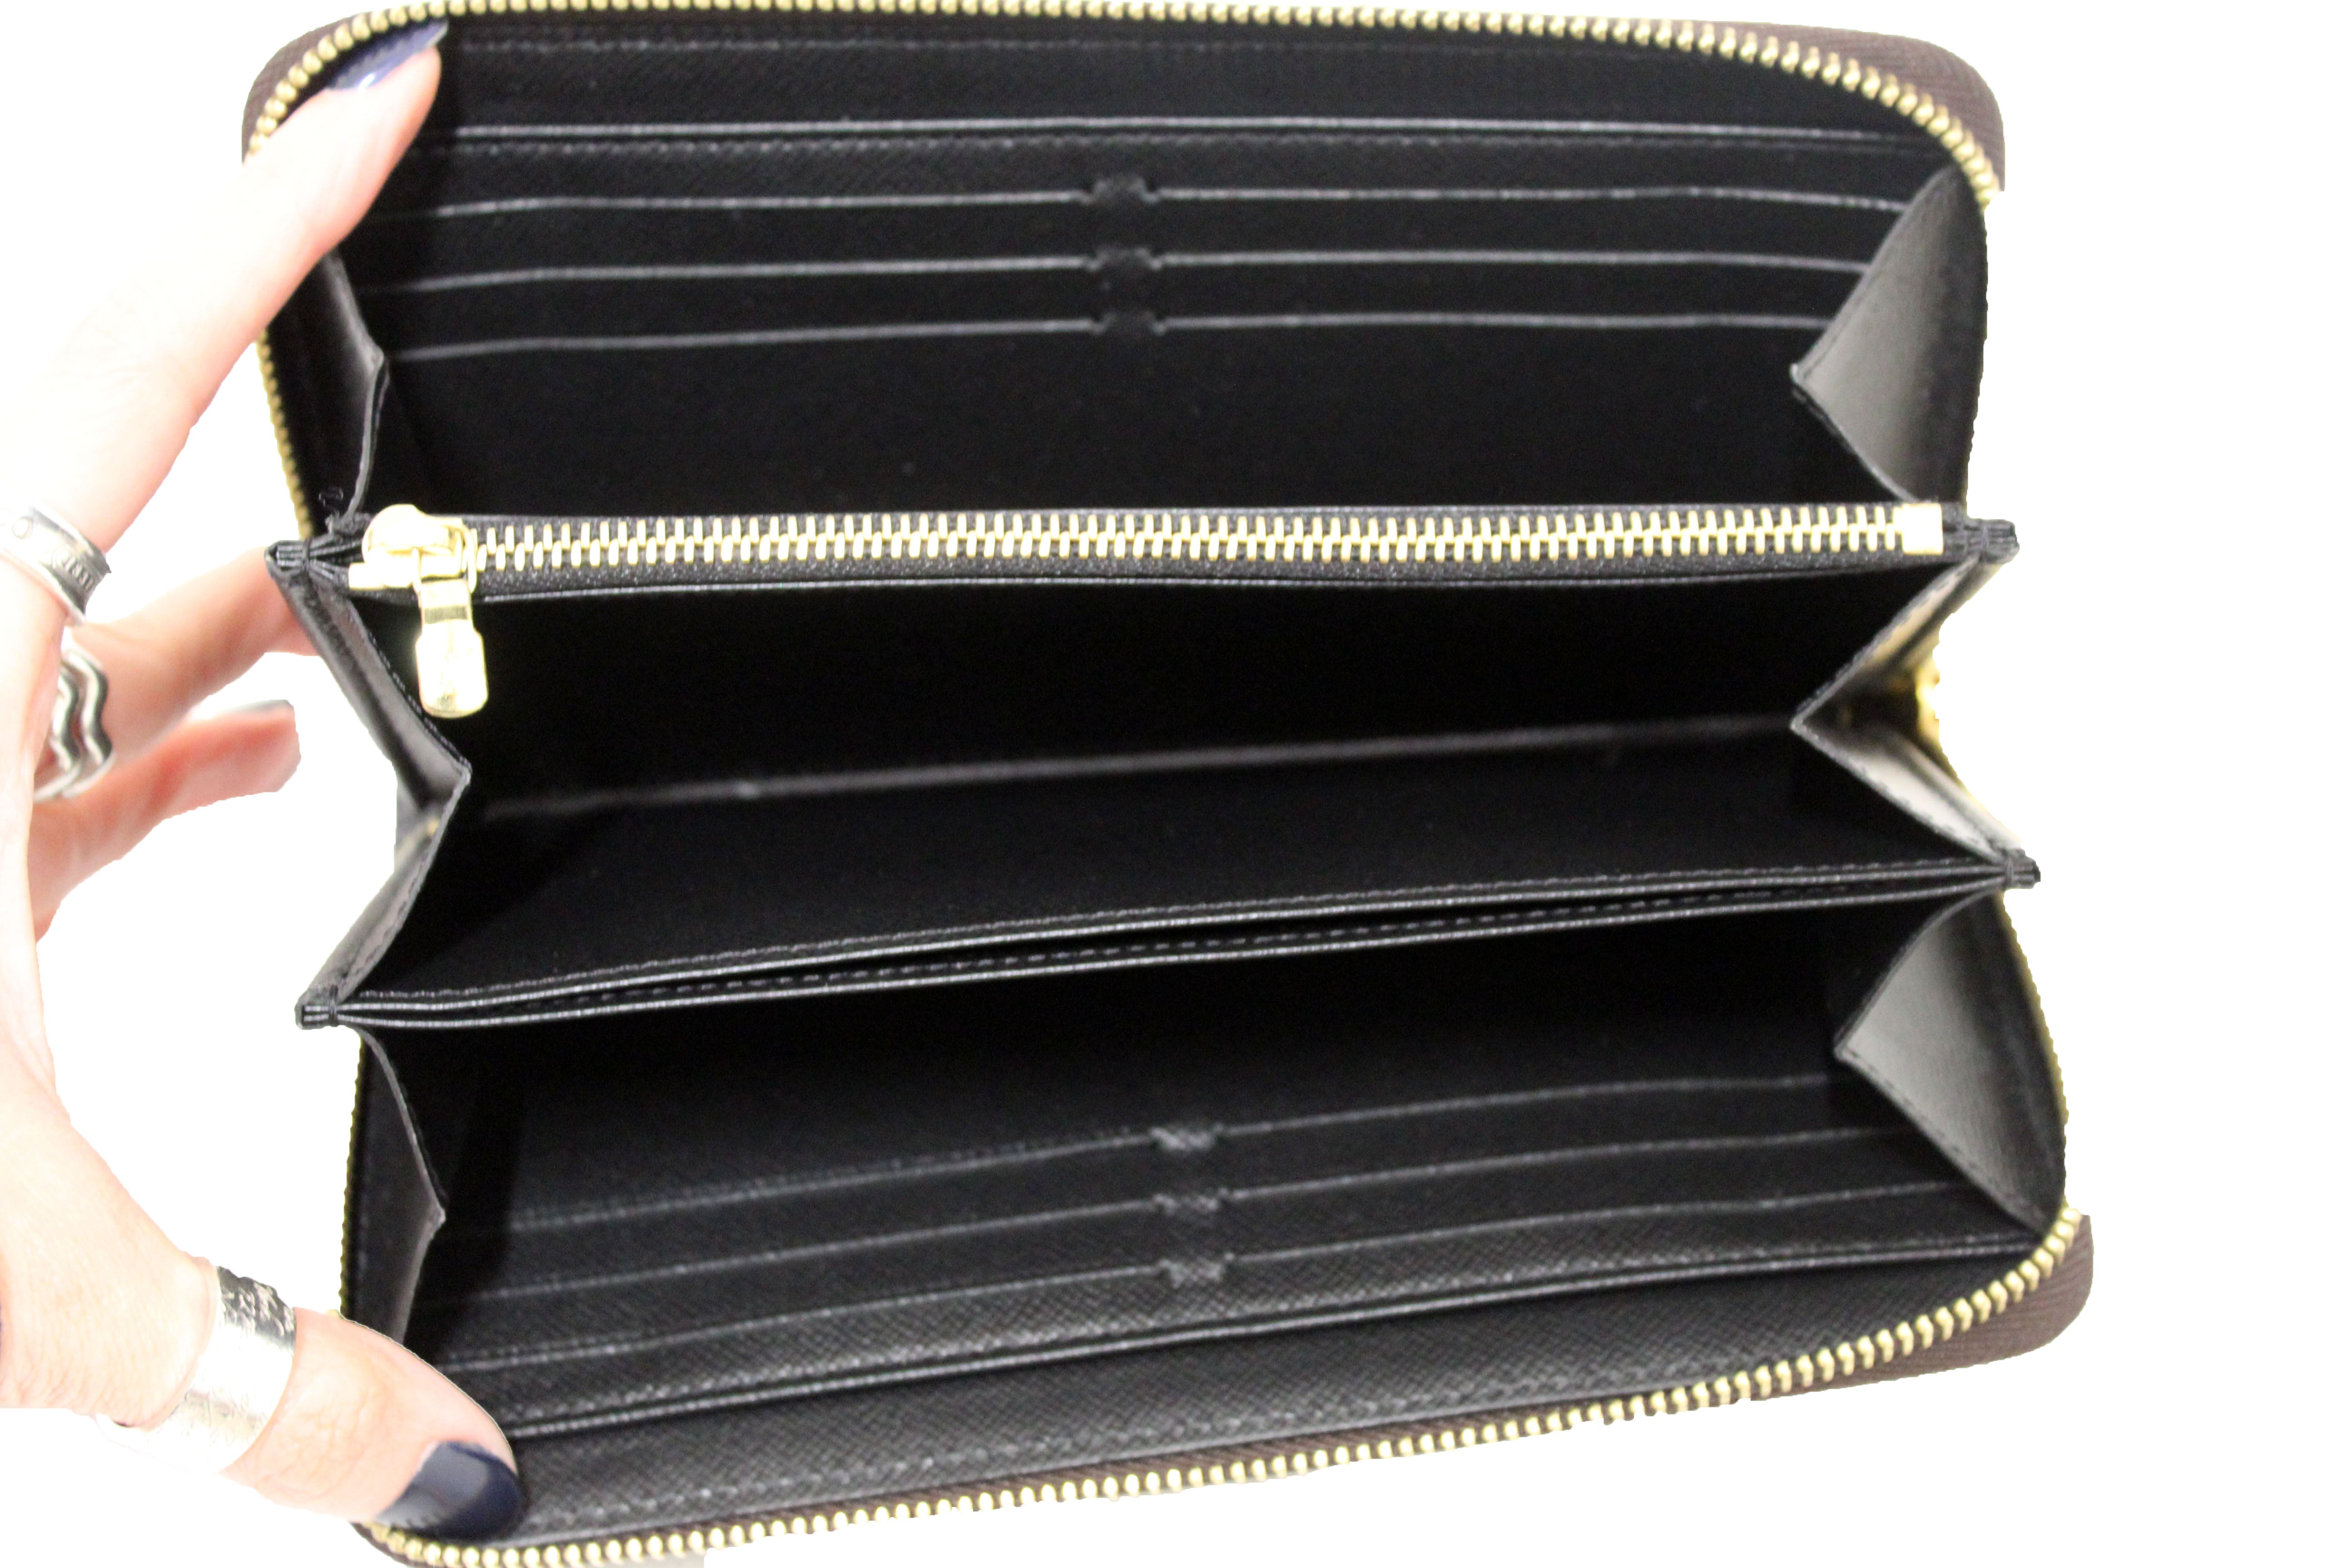 Louis Vuitton Zippy Monogram Patent Leather Wallet on SALE